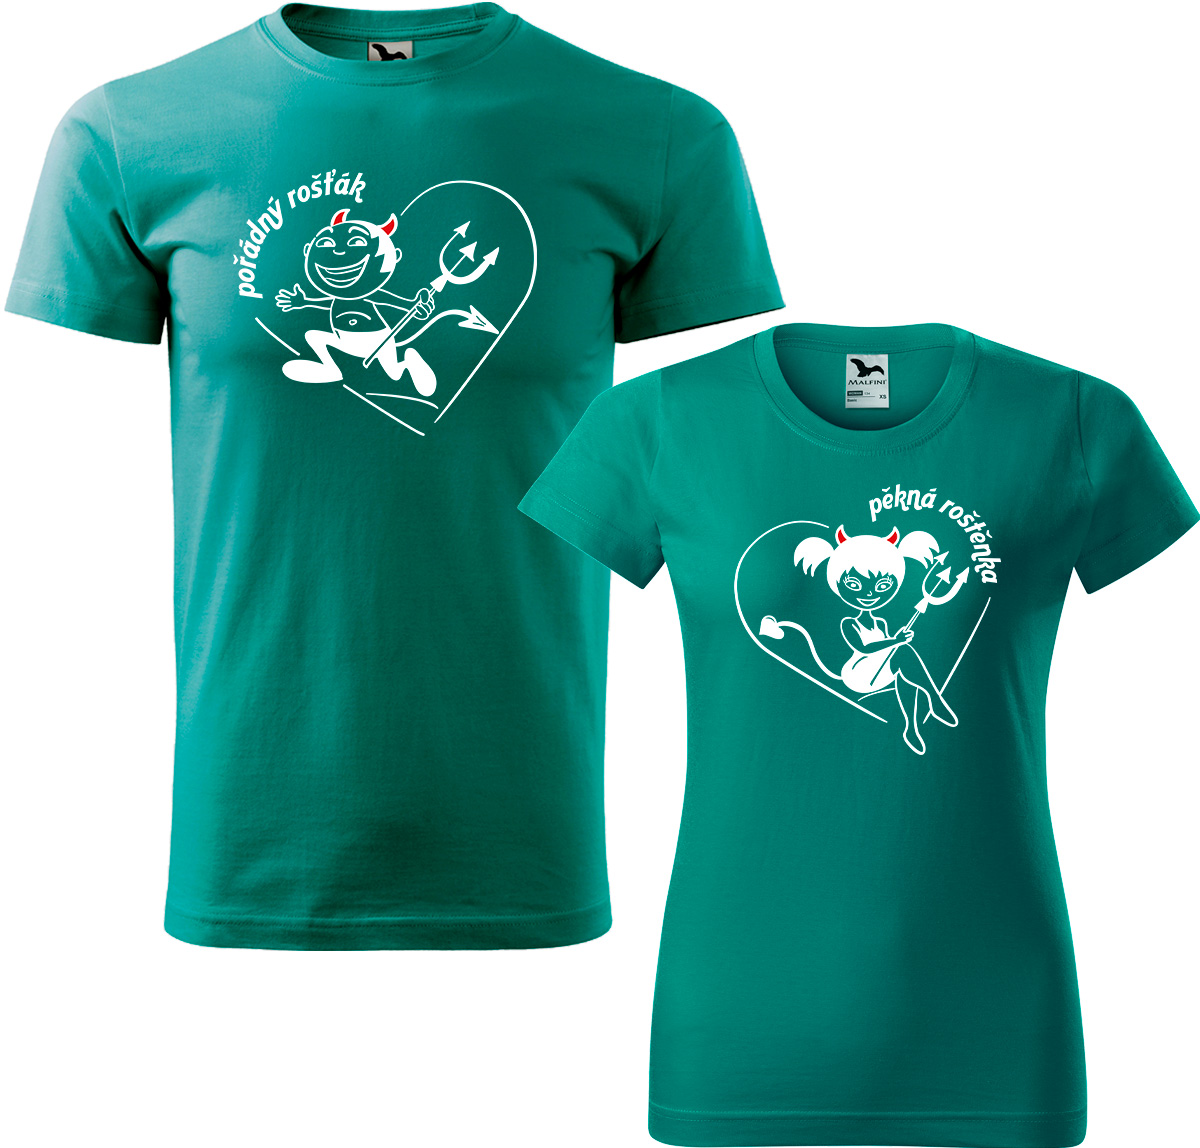 Trička pro páry - Rošťák a roštěnka Barva: Emerald (19), Velikost dámské tričko: 3XL, Velikost pánské tričko: 4XL